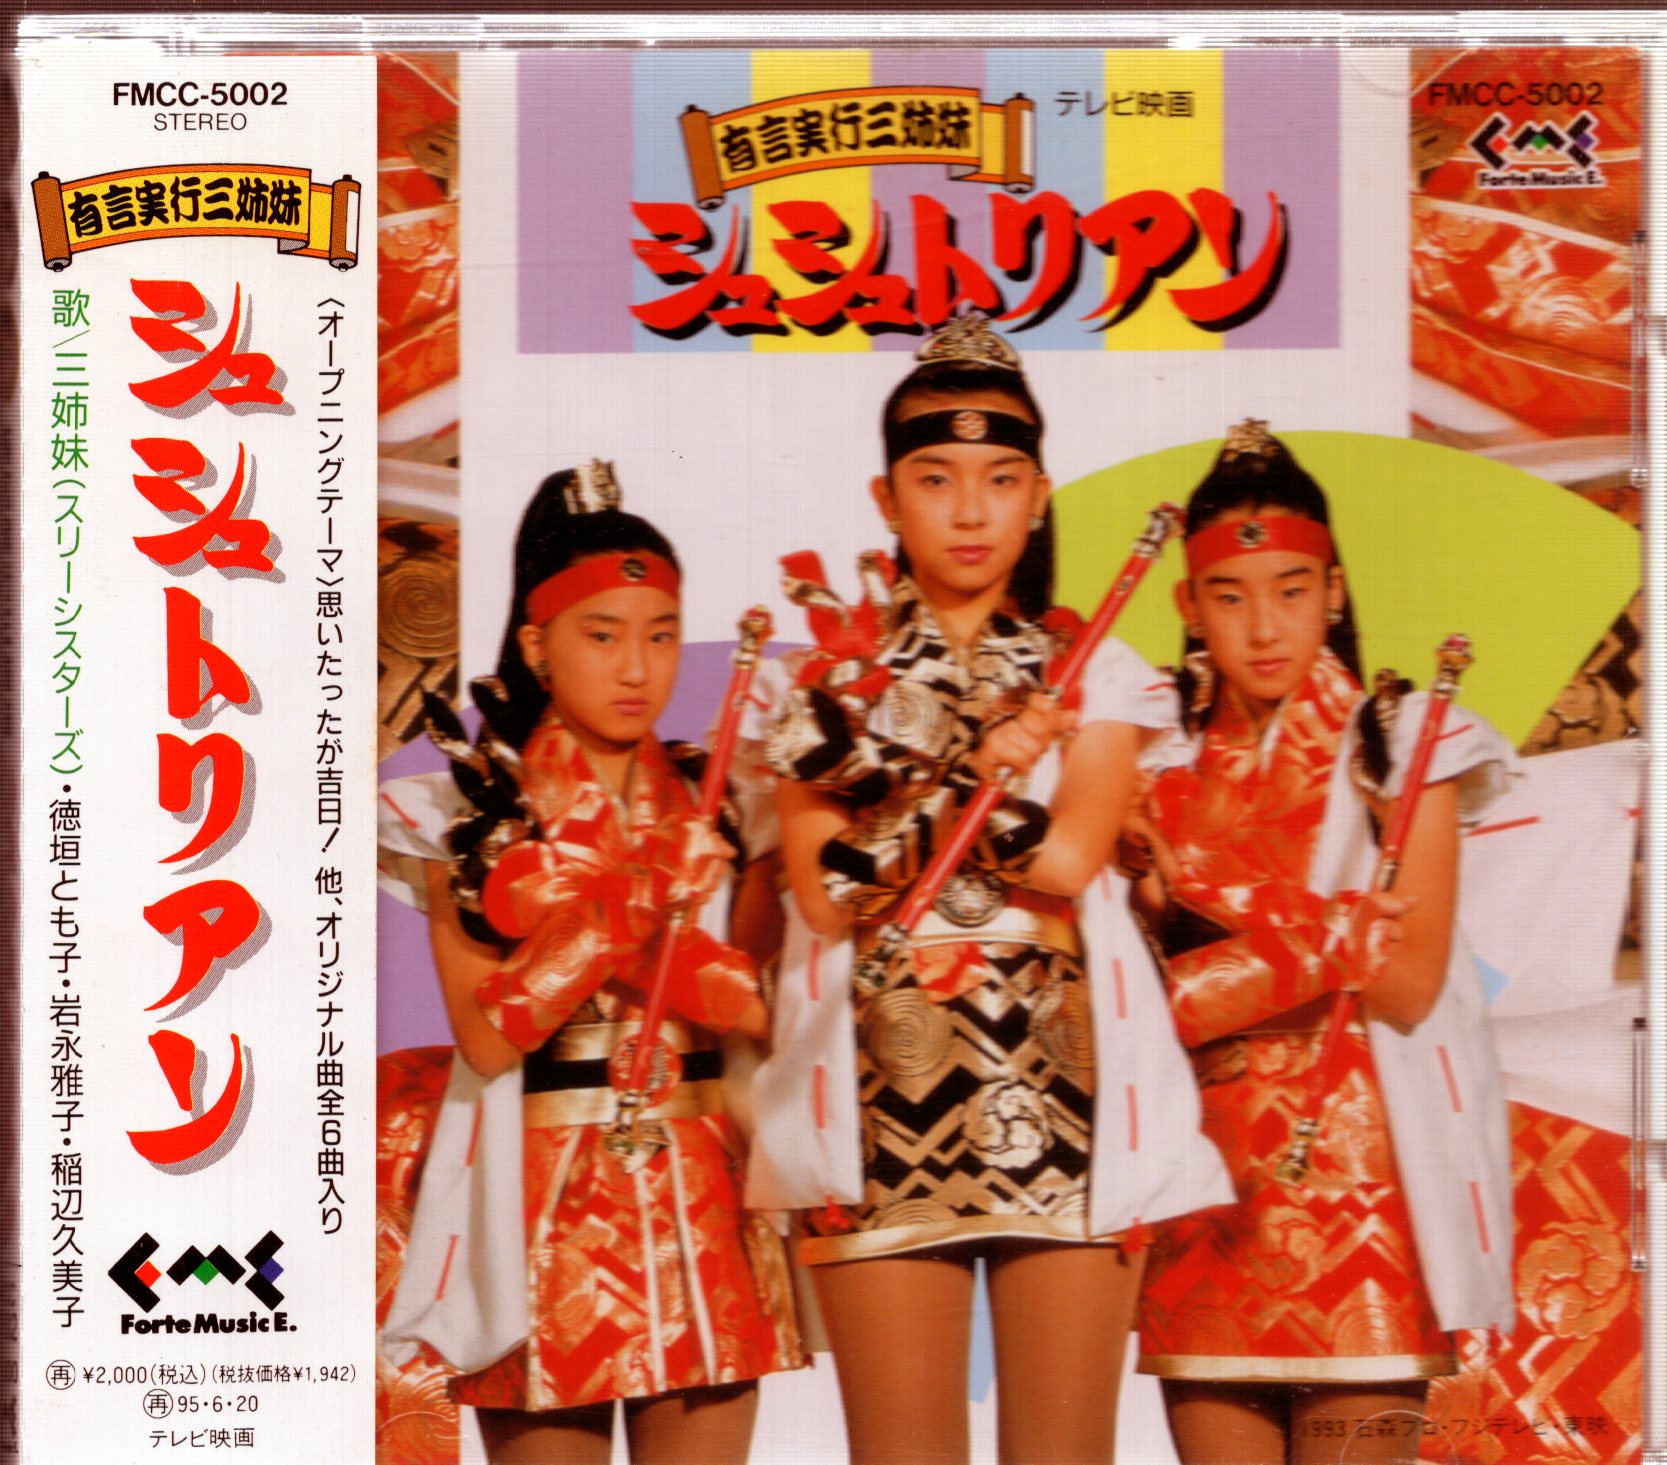 DVD 有言実行三姉妹シュシュトリアン VOL.2 東映ビデオ - 邦画・日本映画